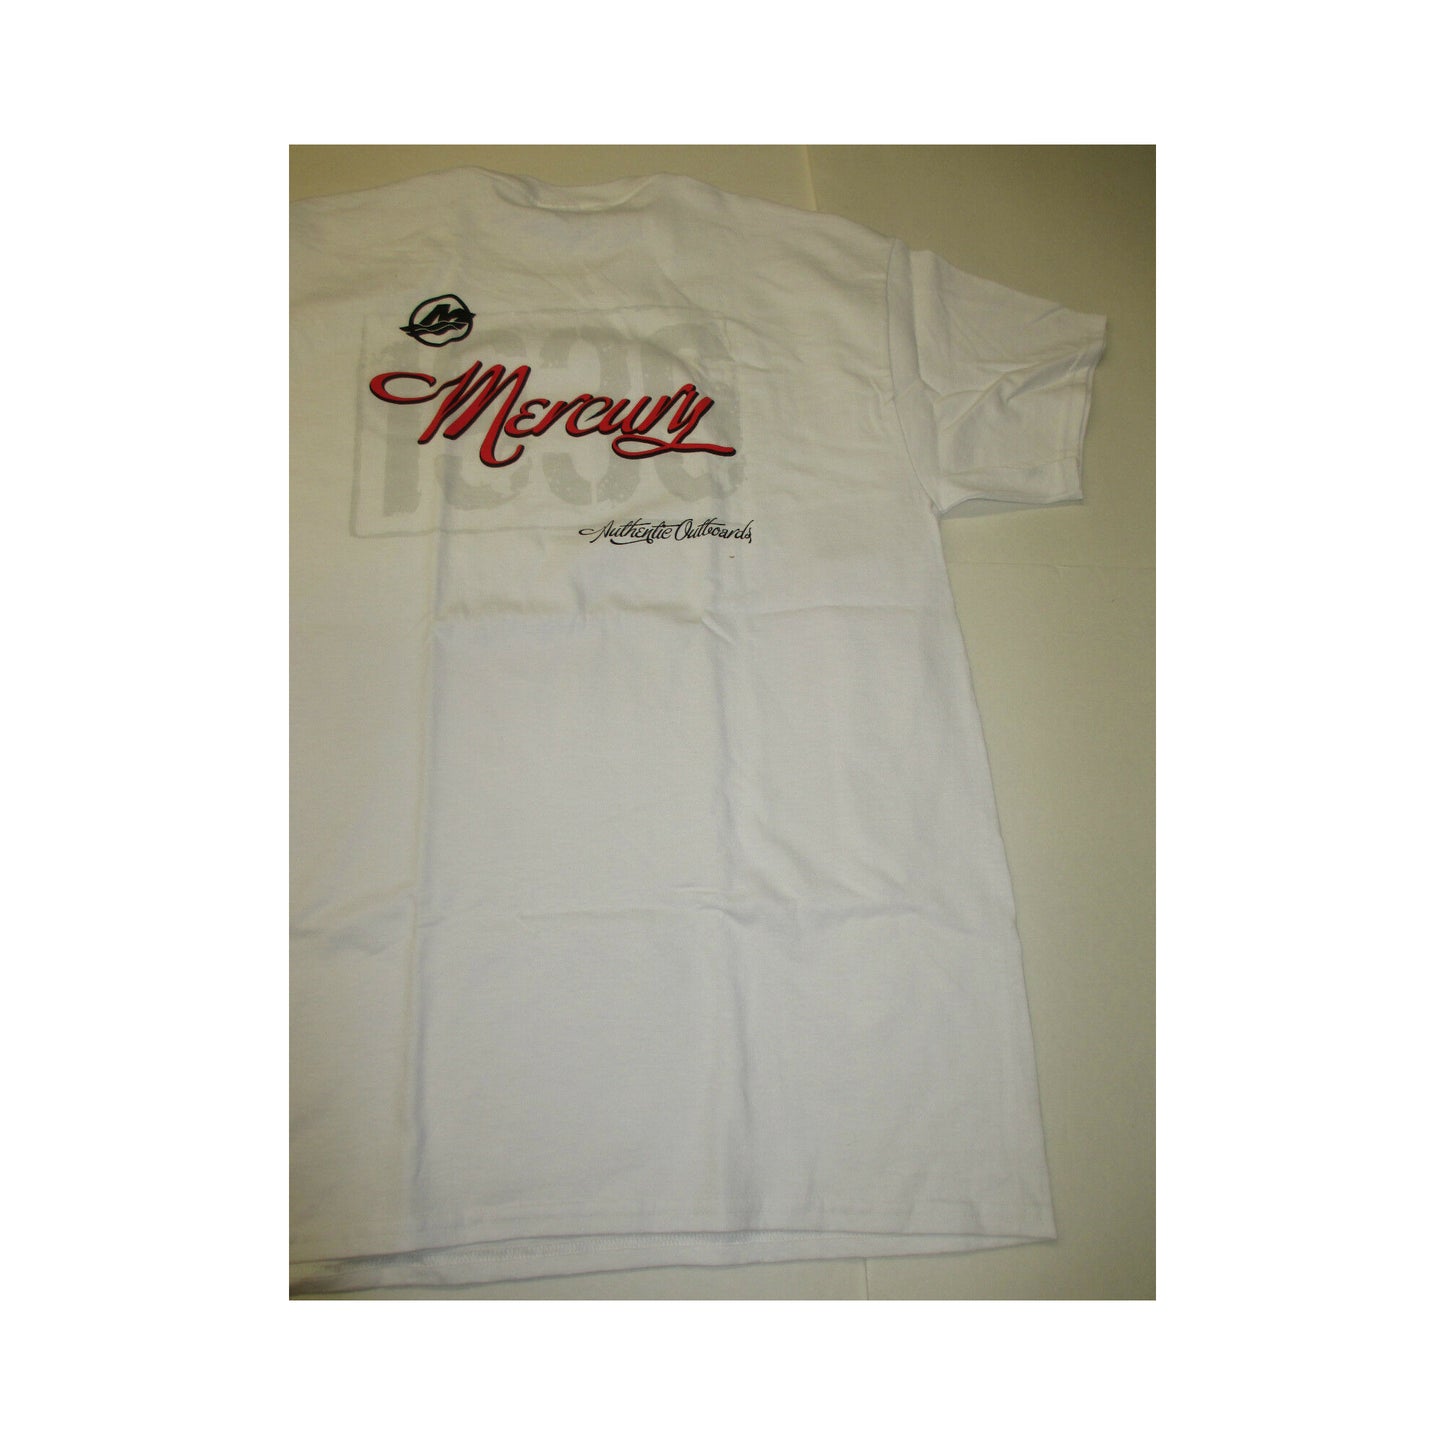 New Authentic Mercury Marine Short Sleeve Shirt-Large- White/ Red Cursive Mercury Outboards on Back